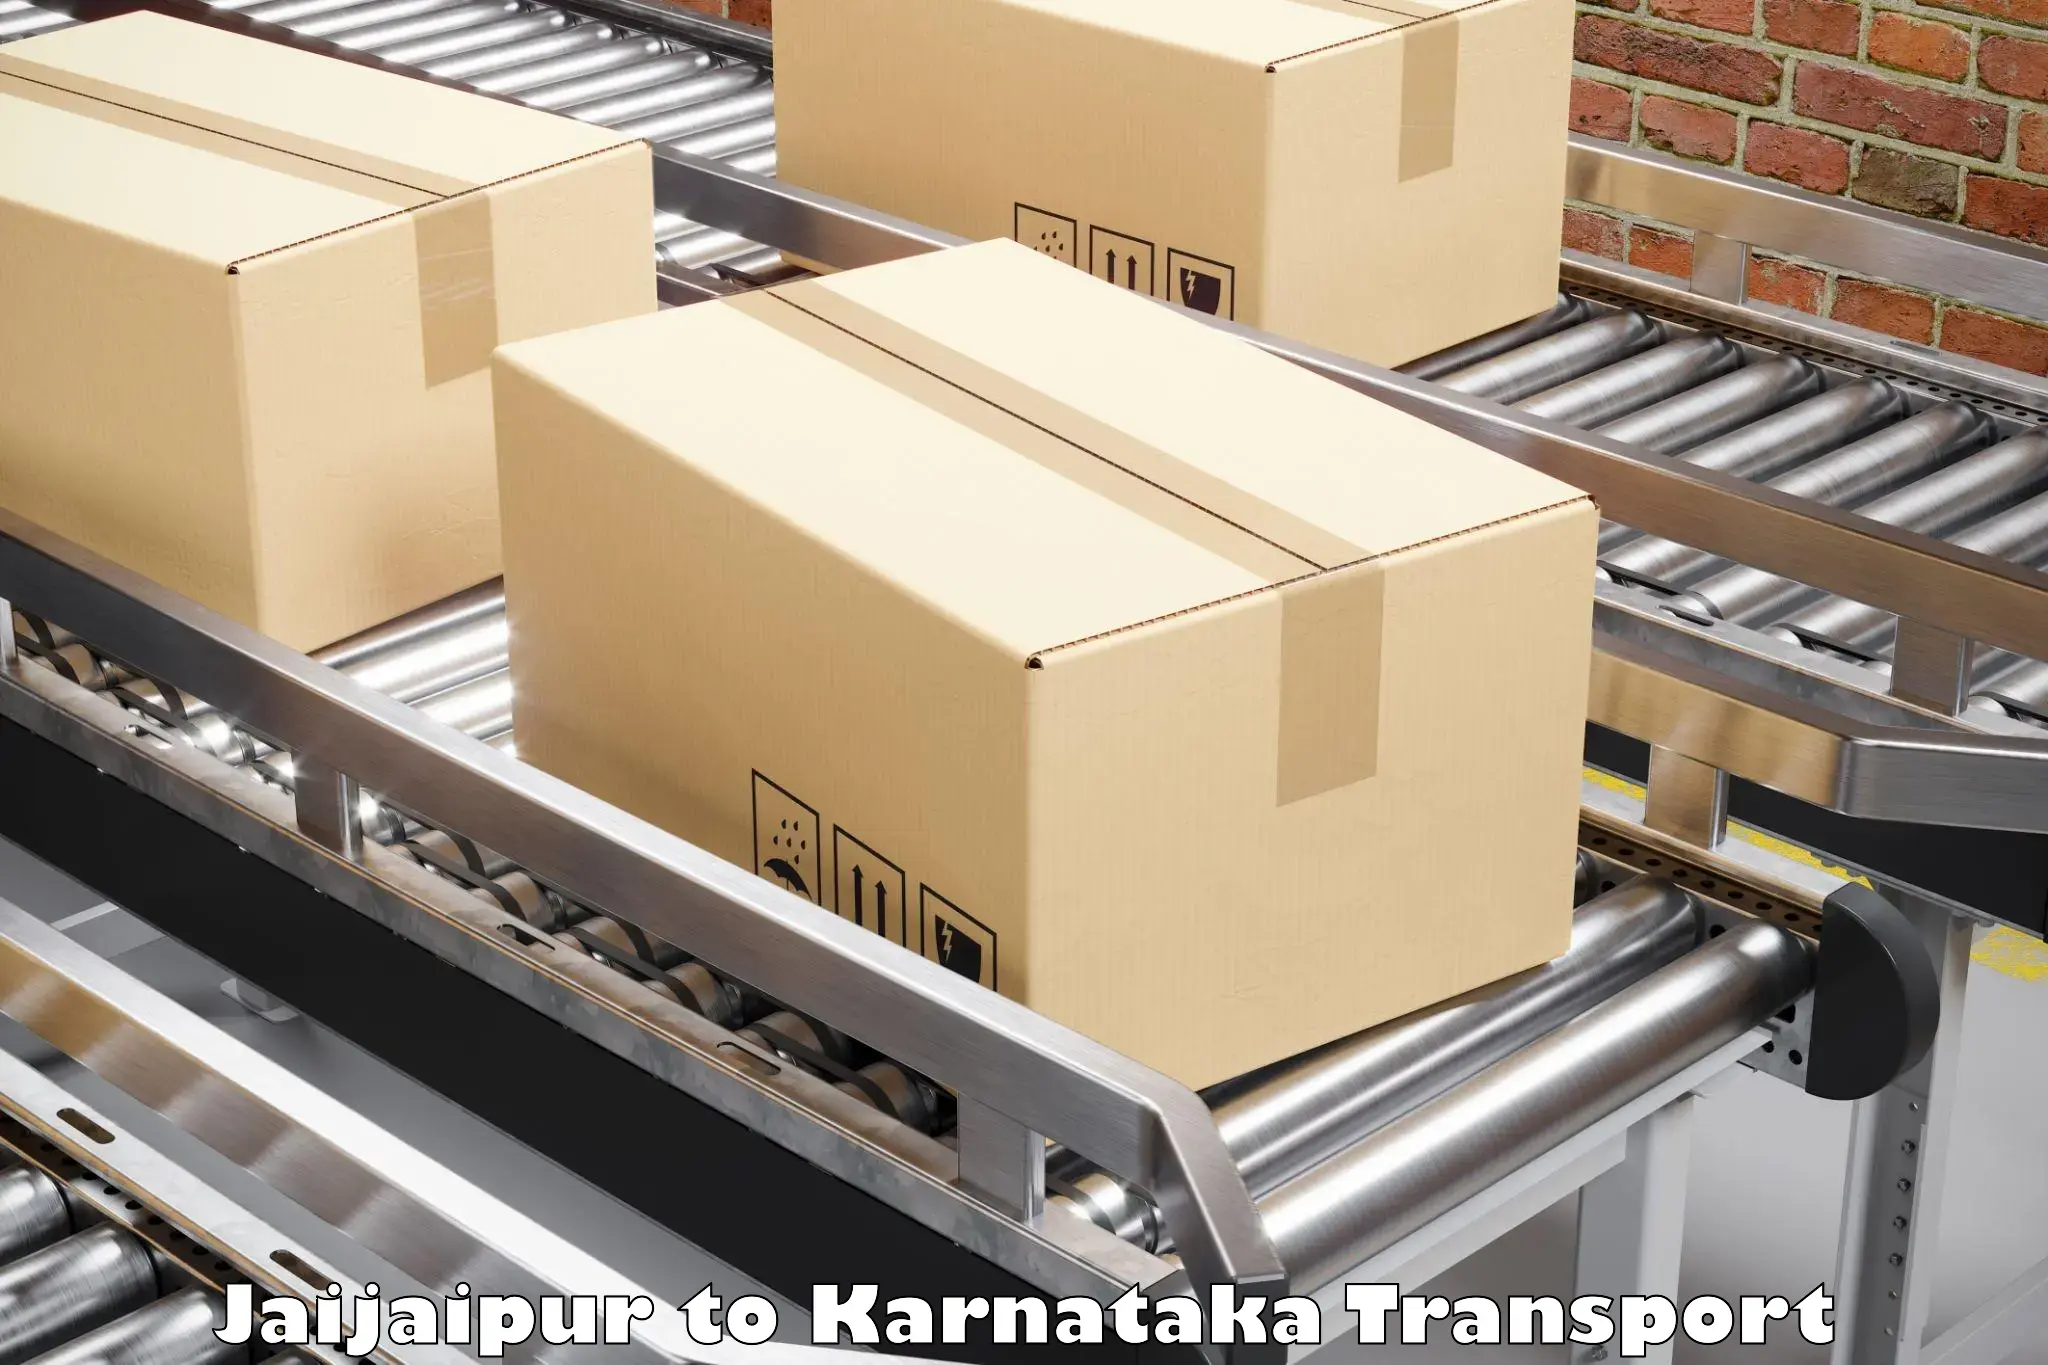 Luggage transport services Jaijaipur to Bidar